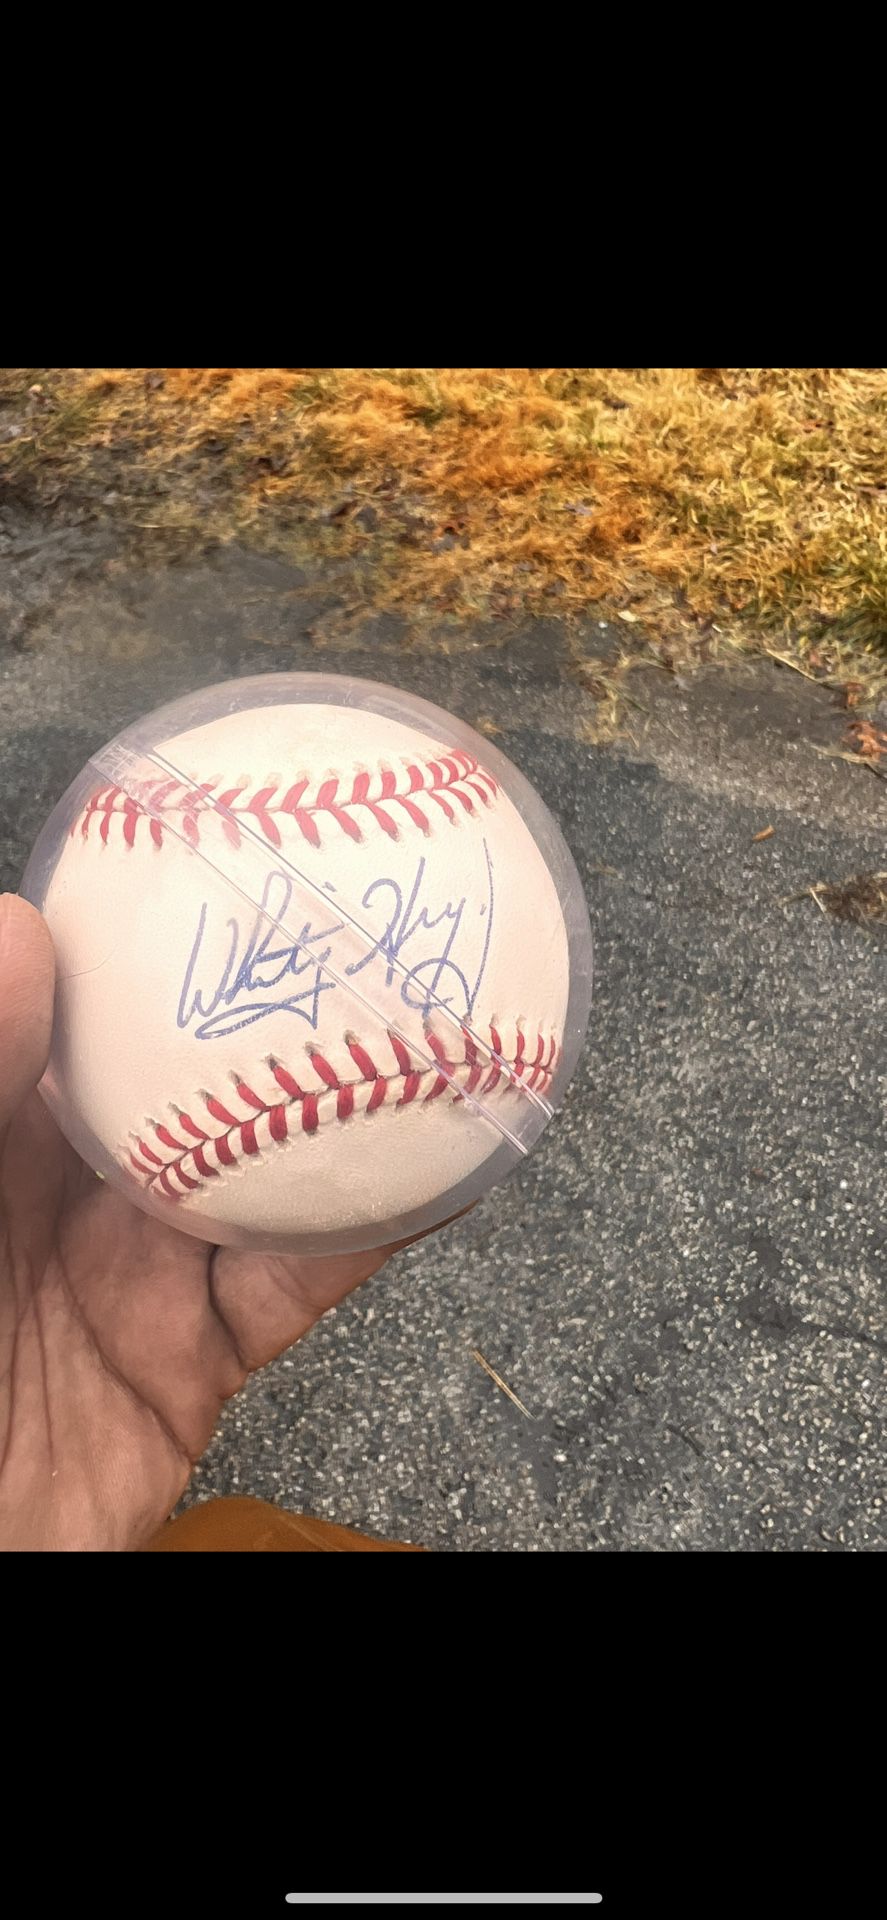 Whitey Herzog Signed Baseball